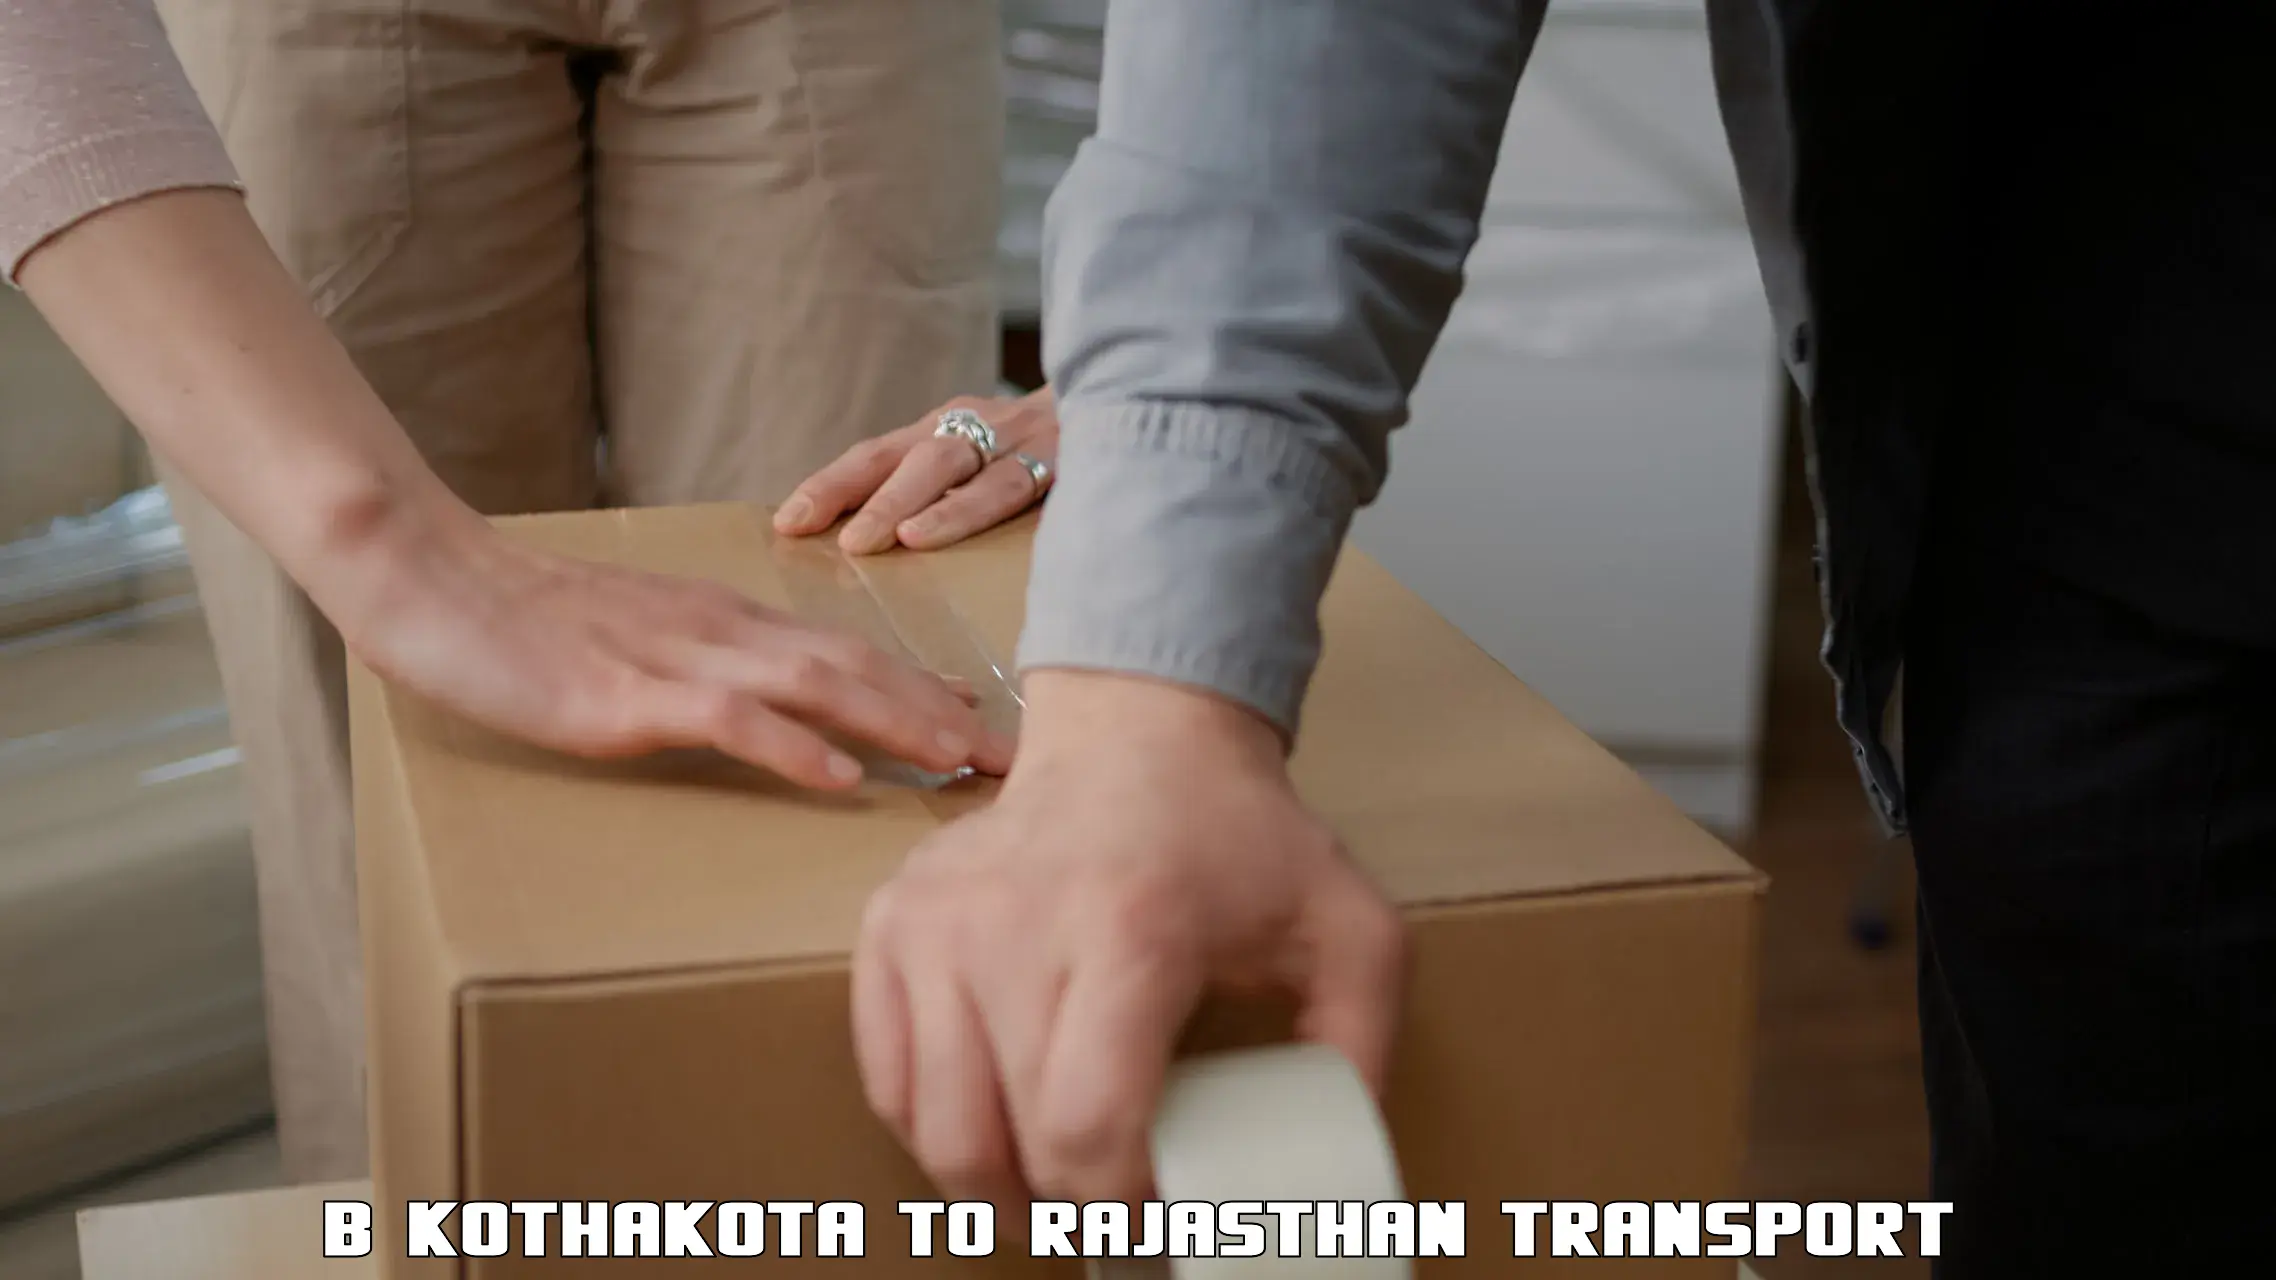 Vehicle parcel service B Kothakota to Rajasthan